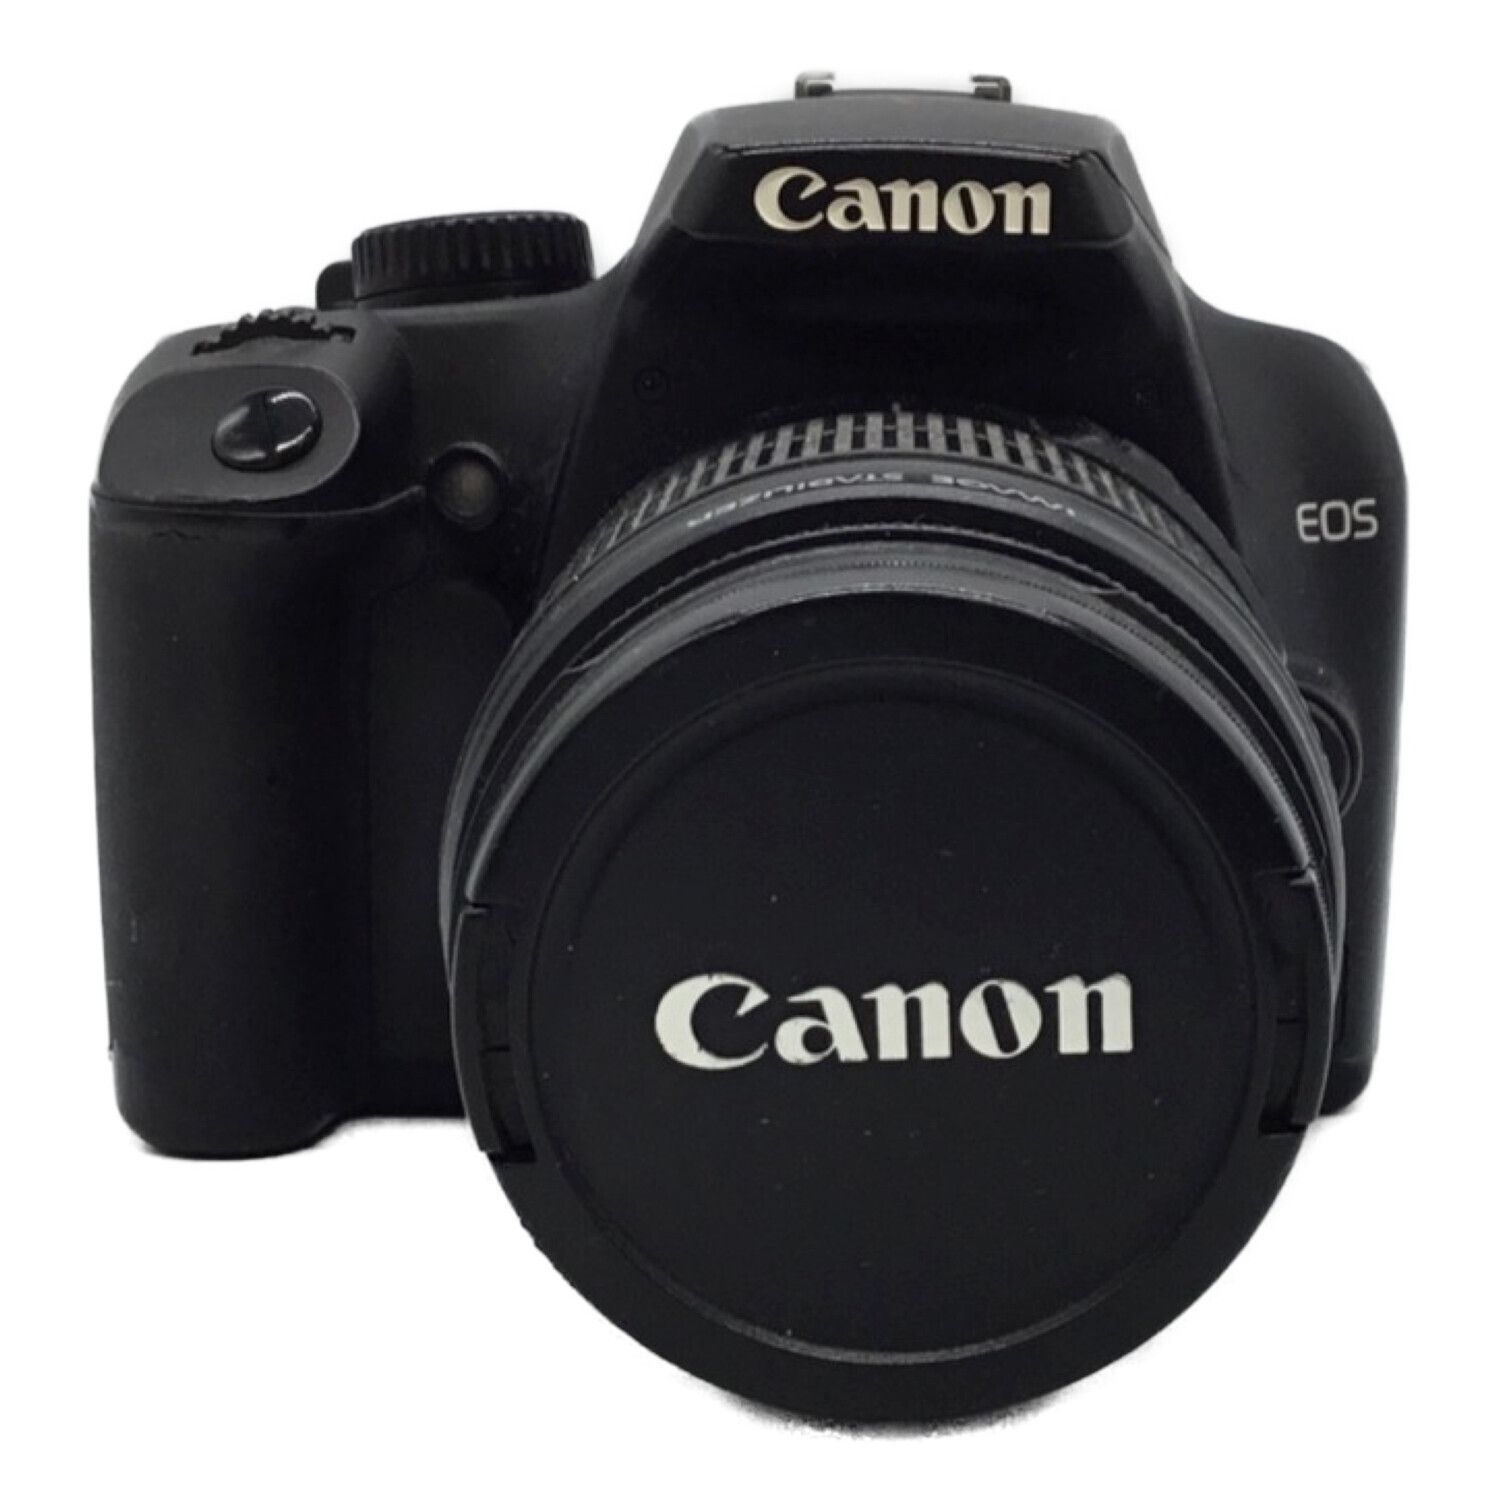 Canon デジタル一眼レフカメラ EOS Kiss X7i ボディー KISSX7I-BODY